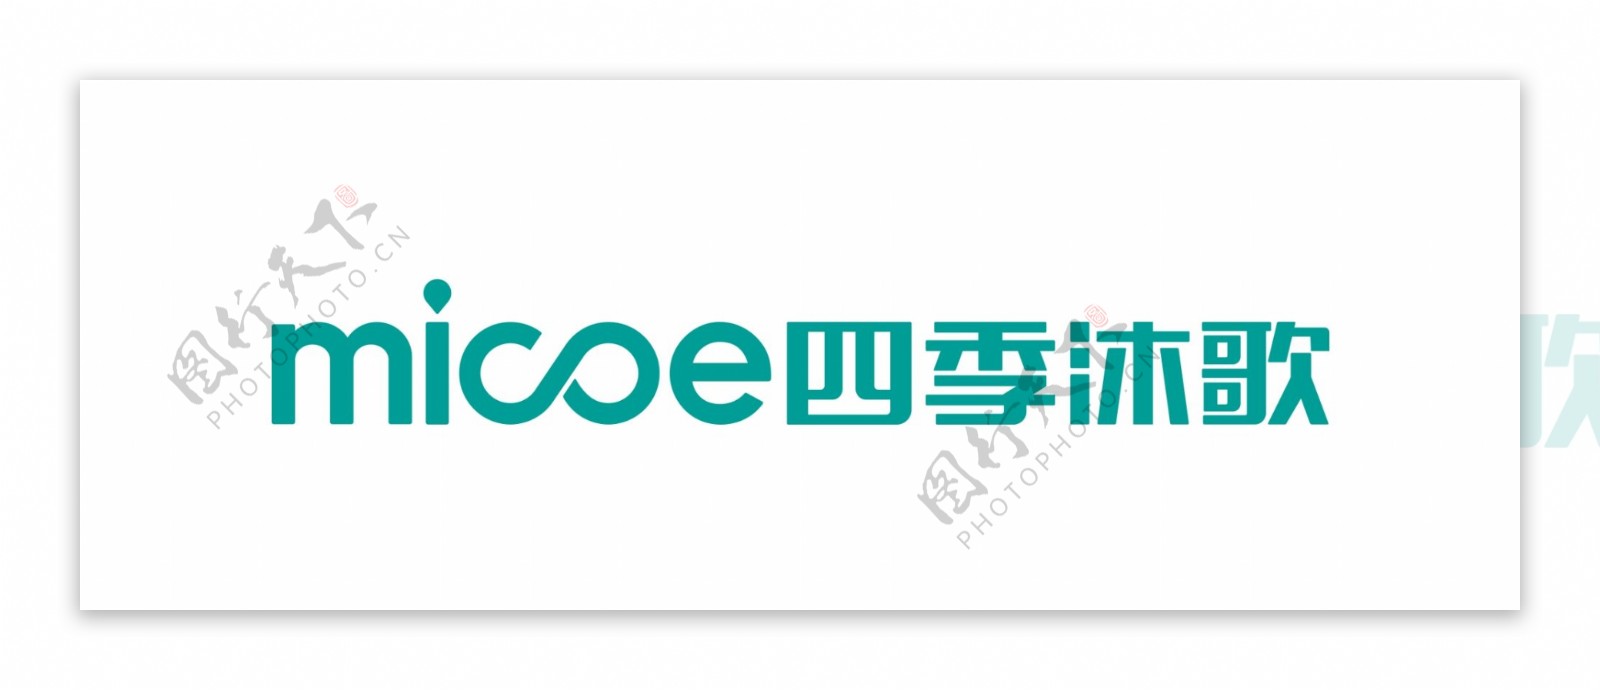 四季沐歌micoe最新logo